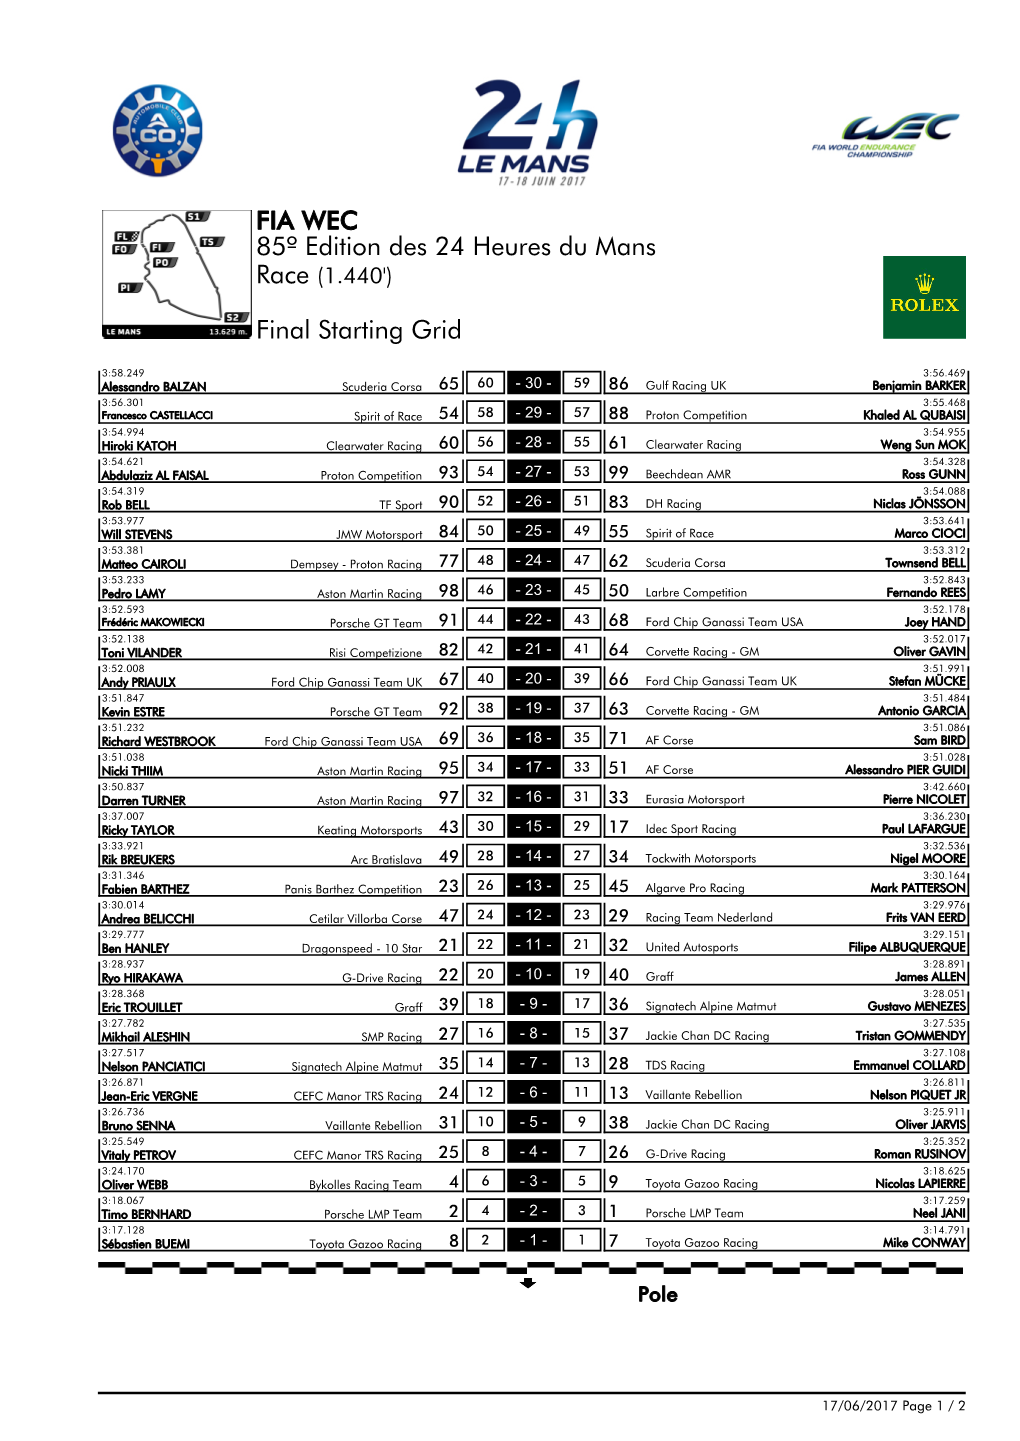 Final Starting Grid 85º Edition Des 24 Heures Du Mans FIA